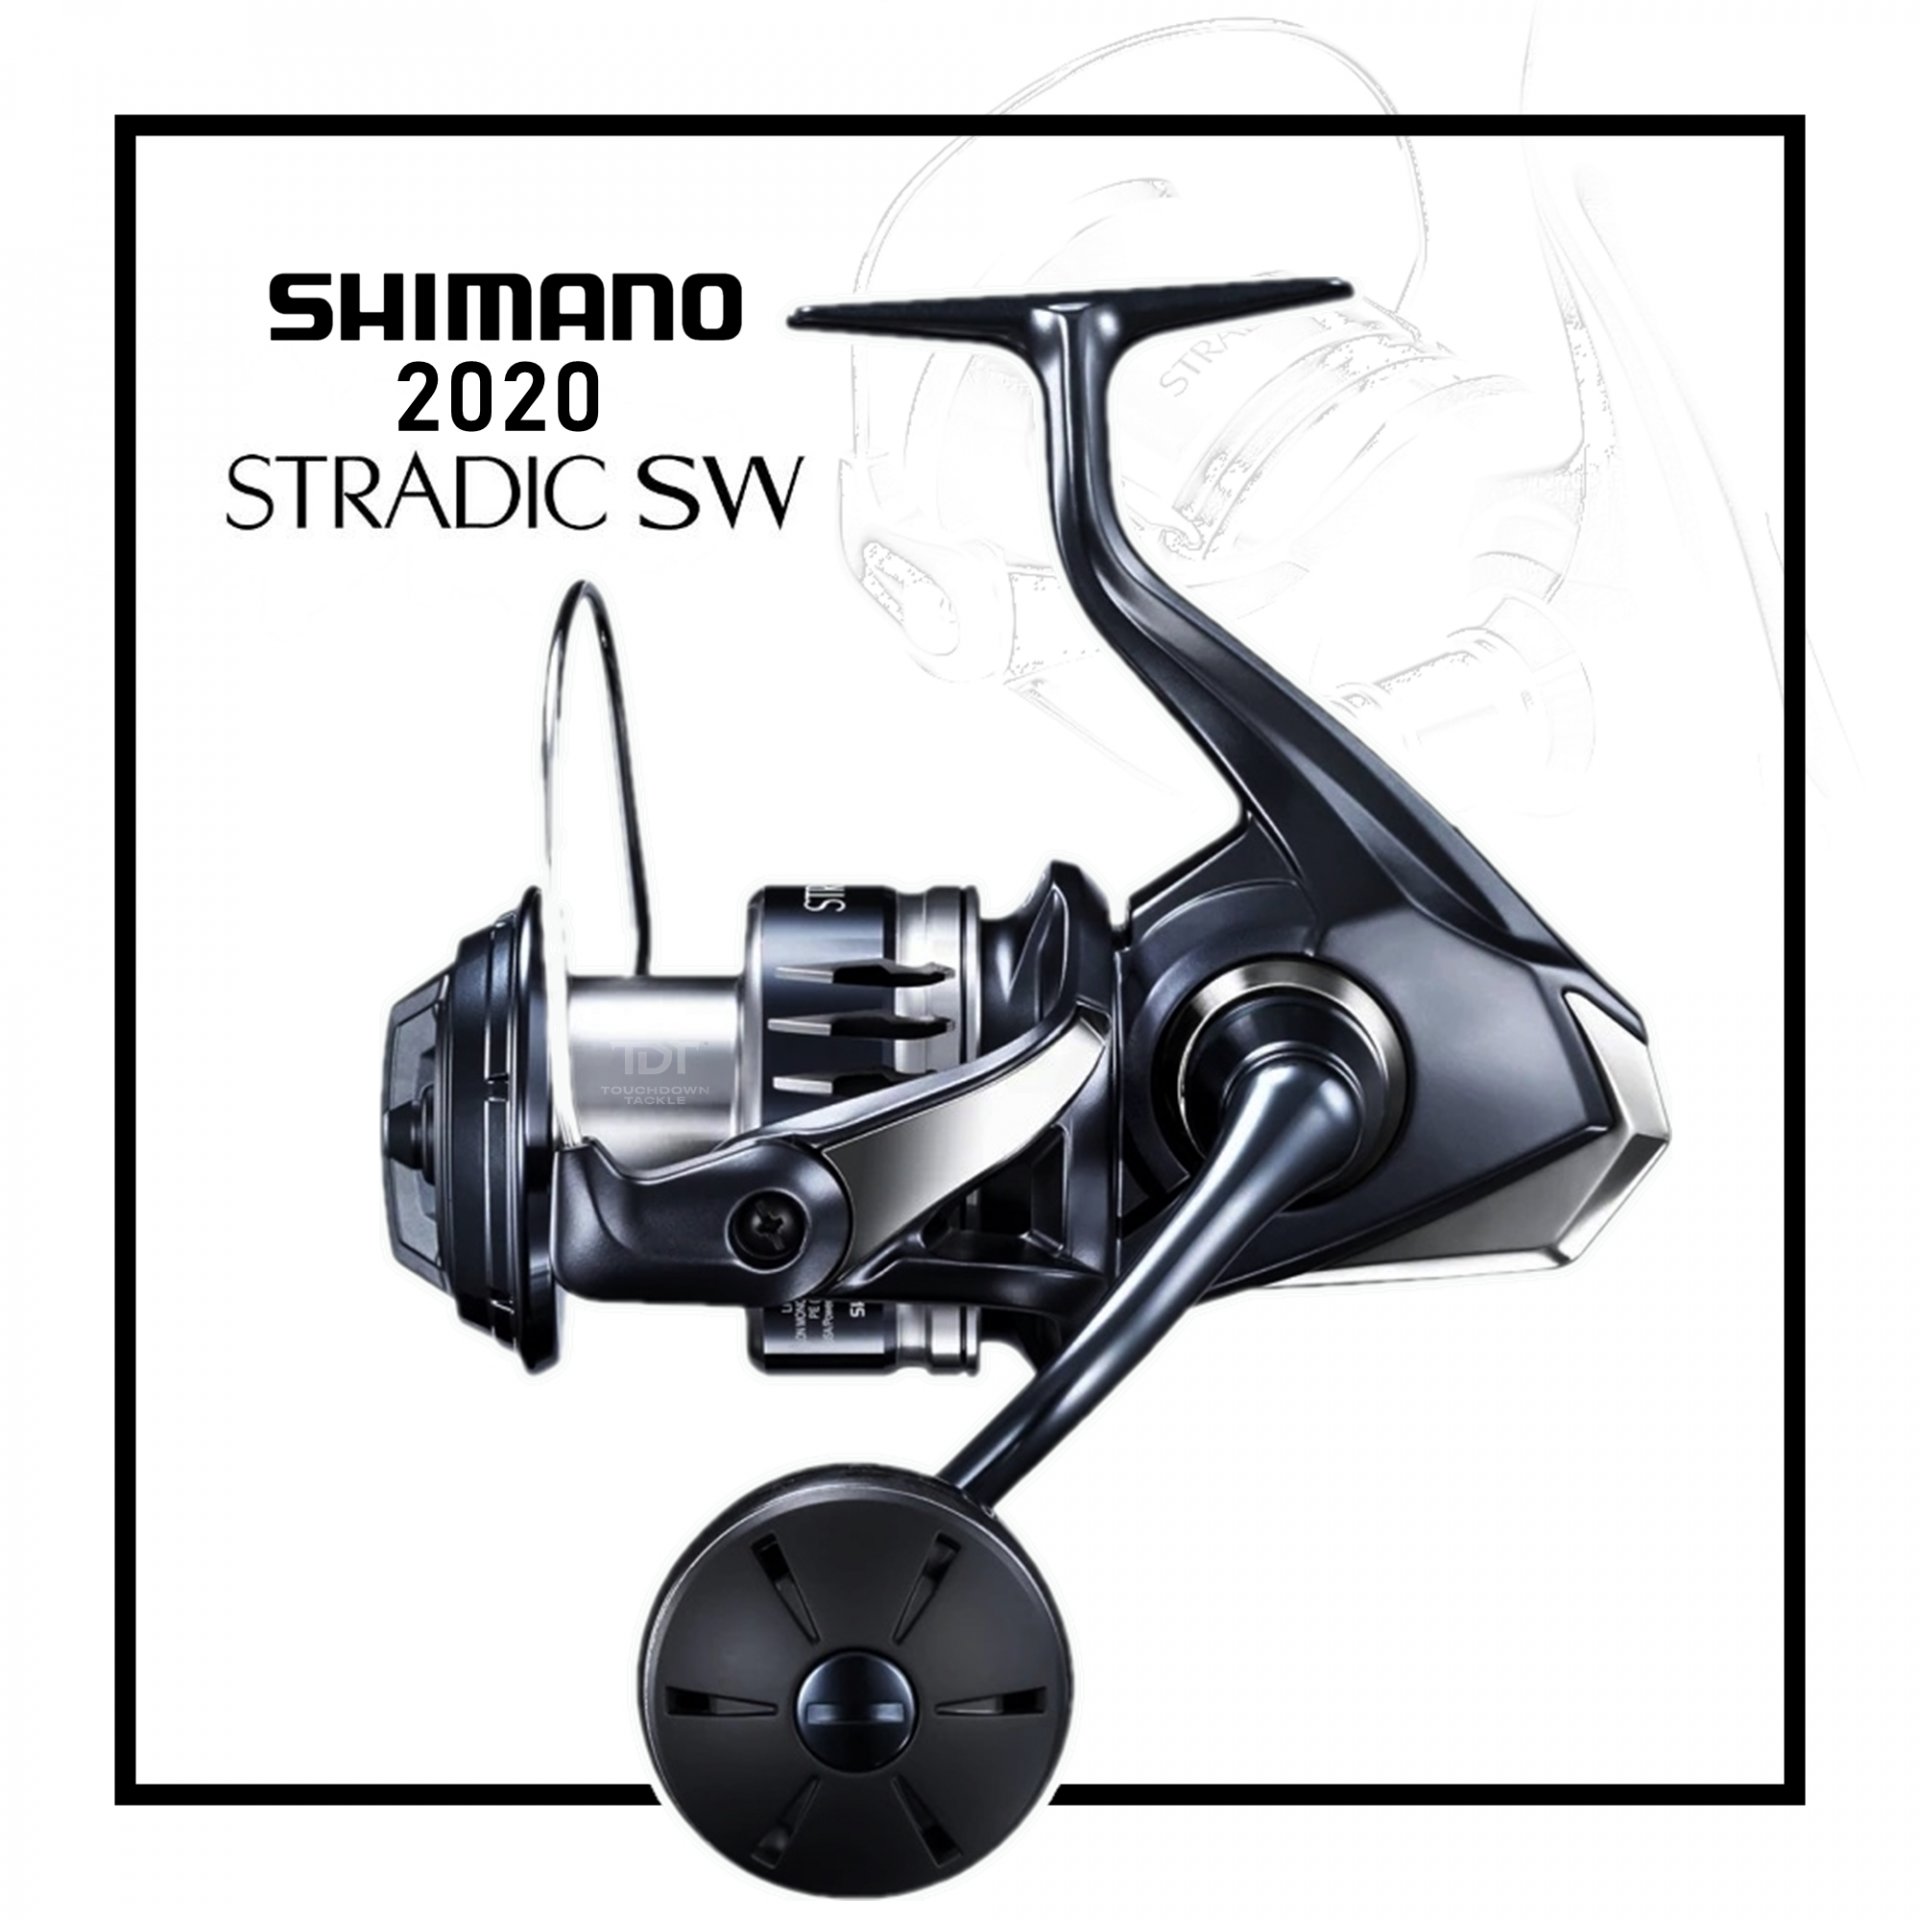 Stradic SW4000HG/XG Fishing/Jigging/Spinning Reel by Shimano